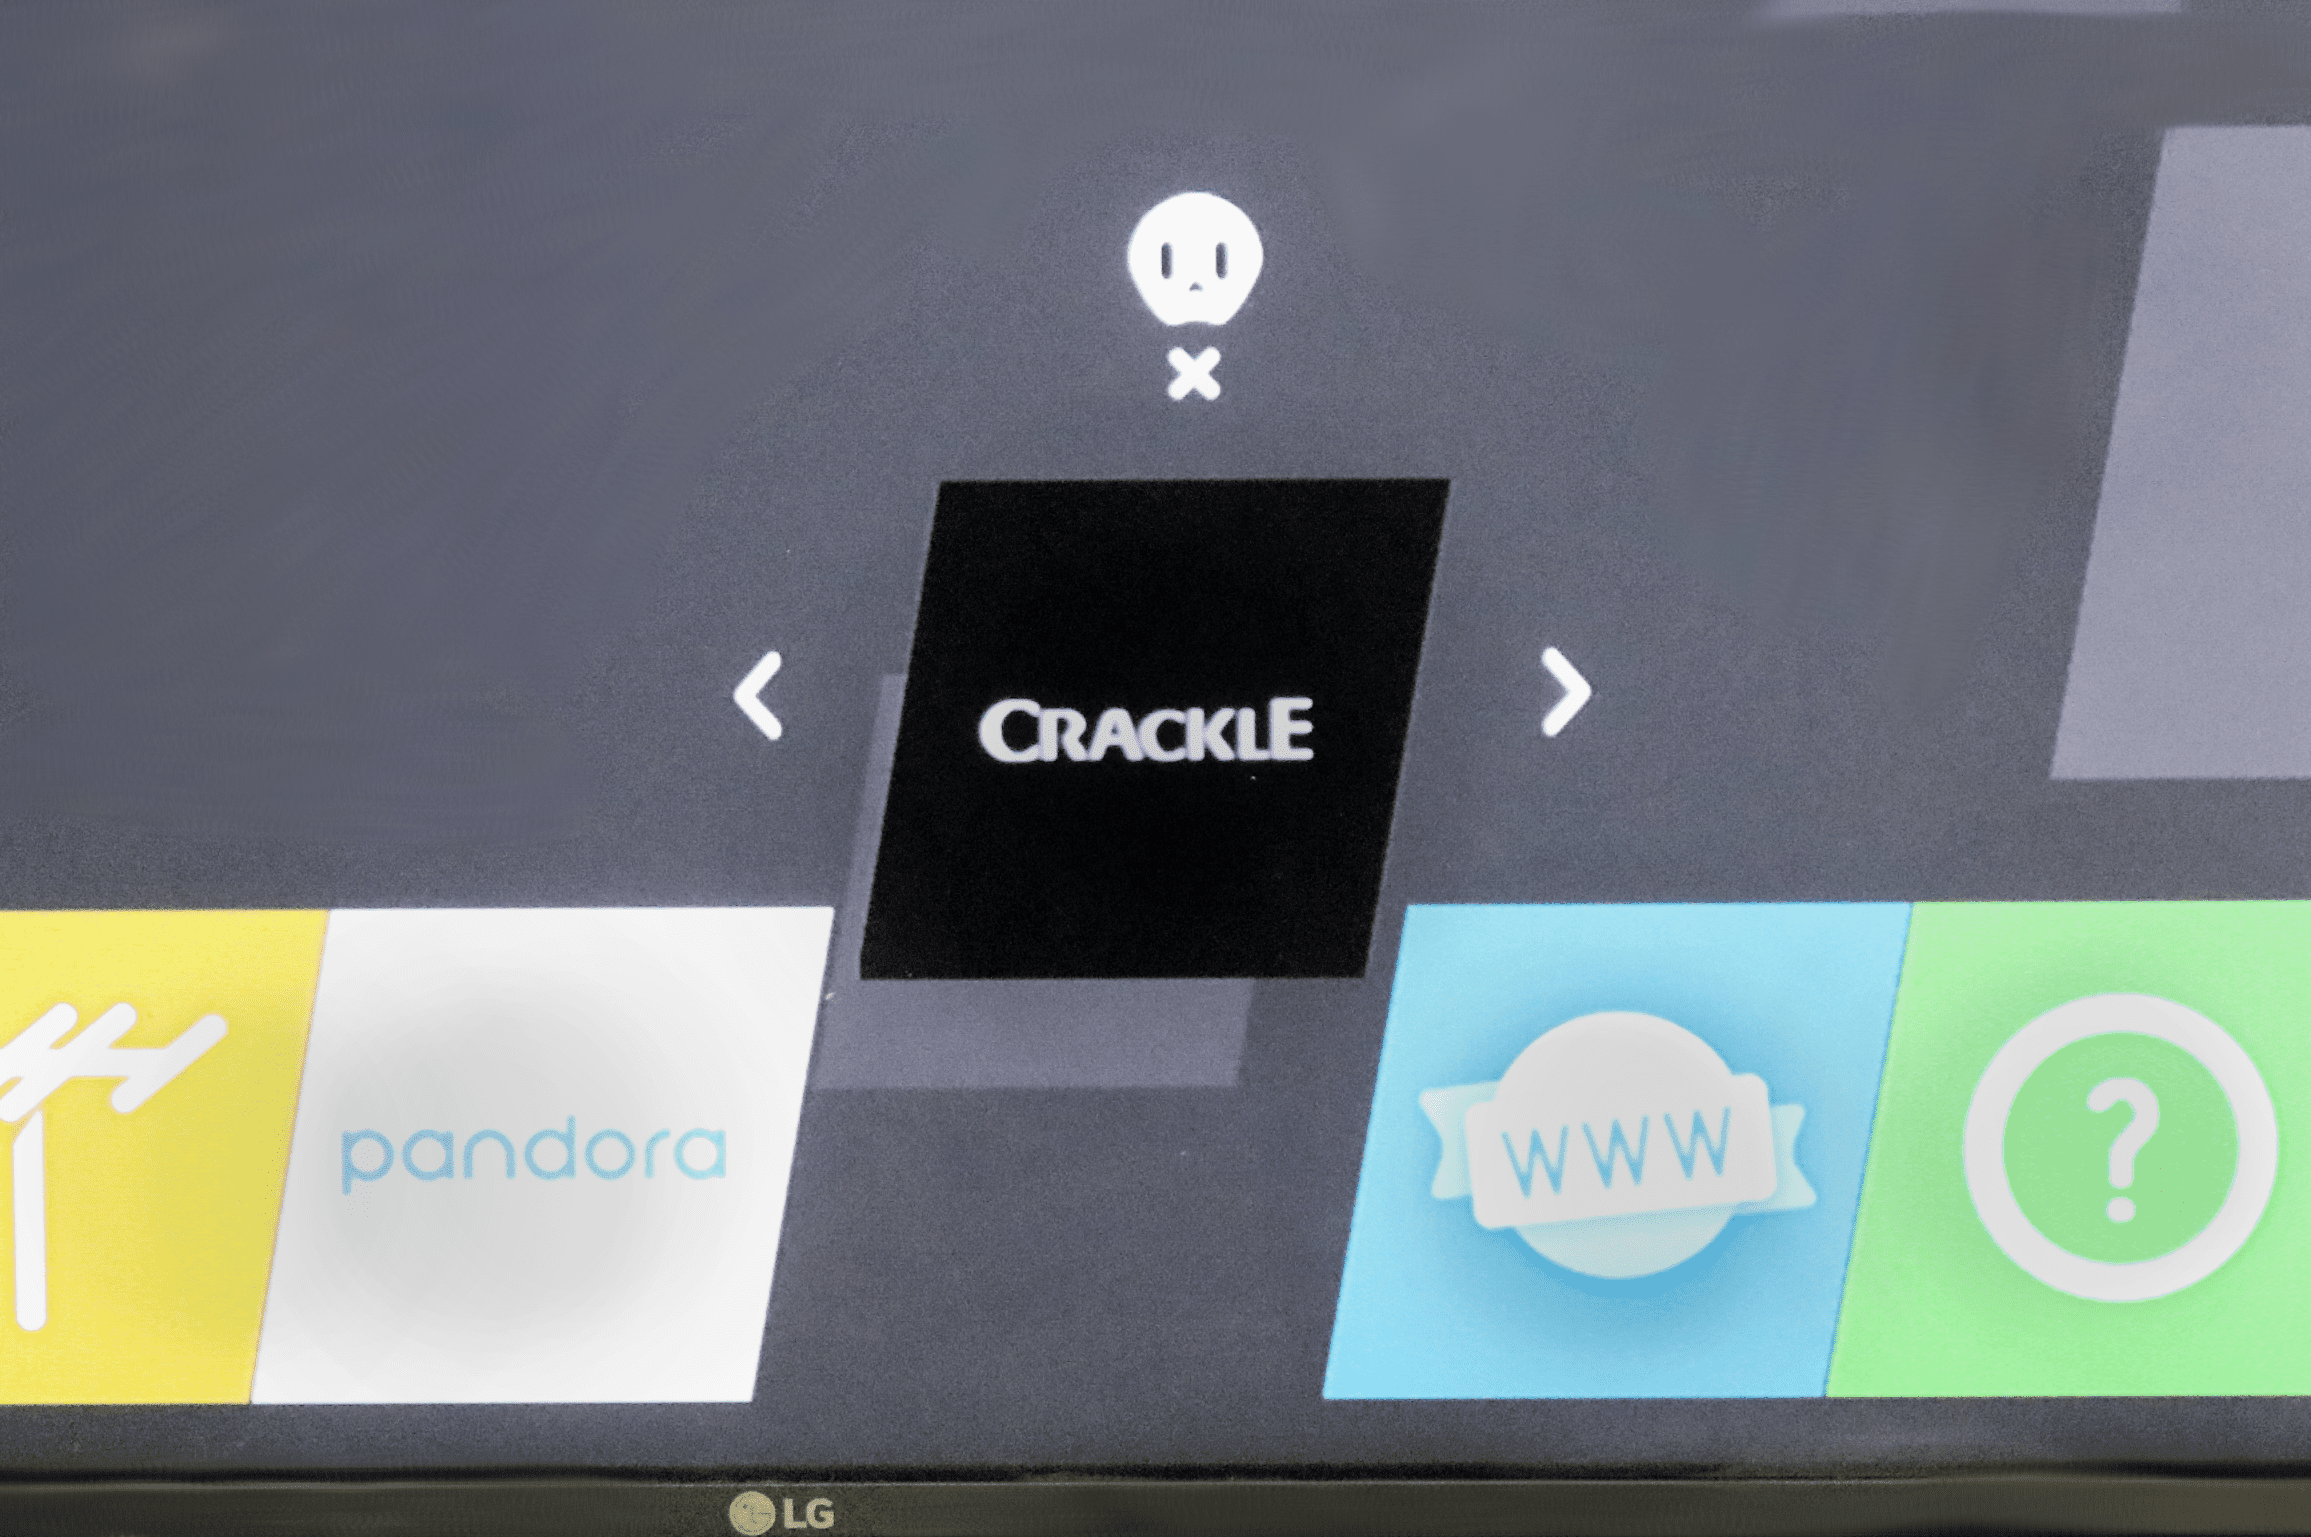 Призрачный значок над приложением Crackle на телевизоре LG.